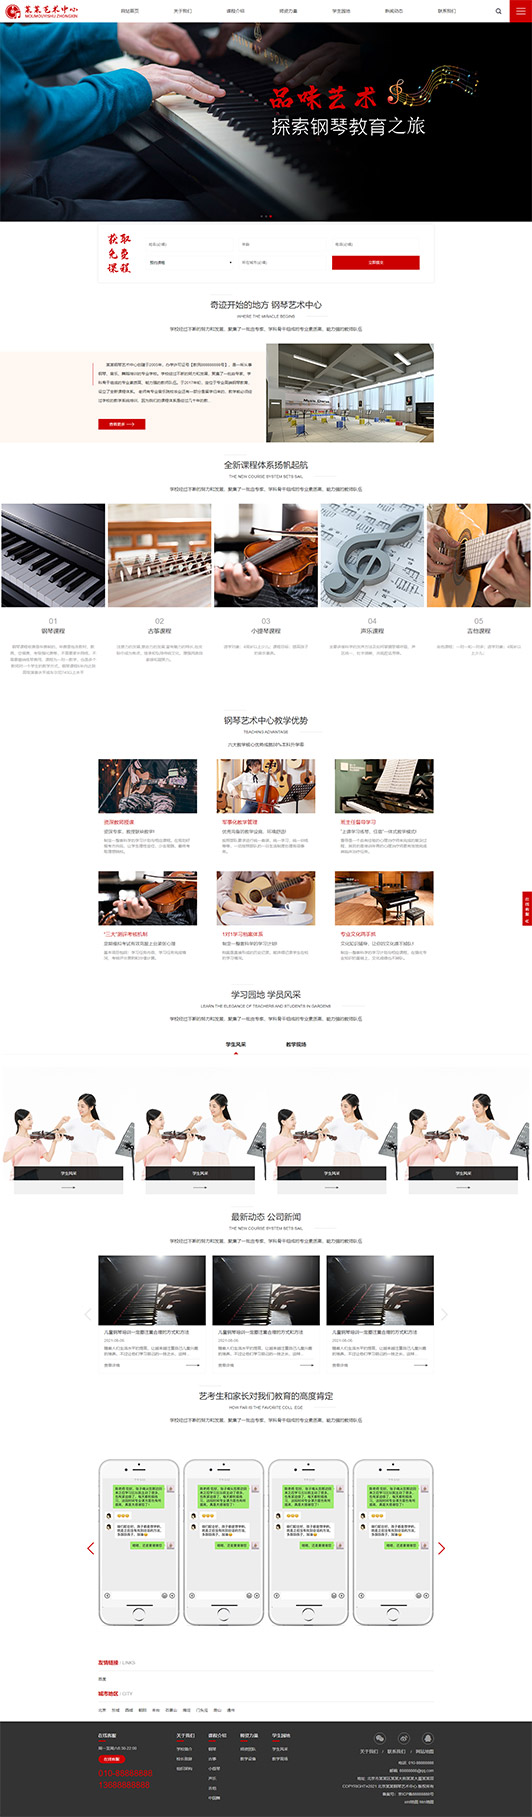 贺州钢琴艺术培训公司响应式企业网站